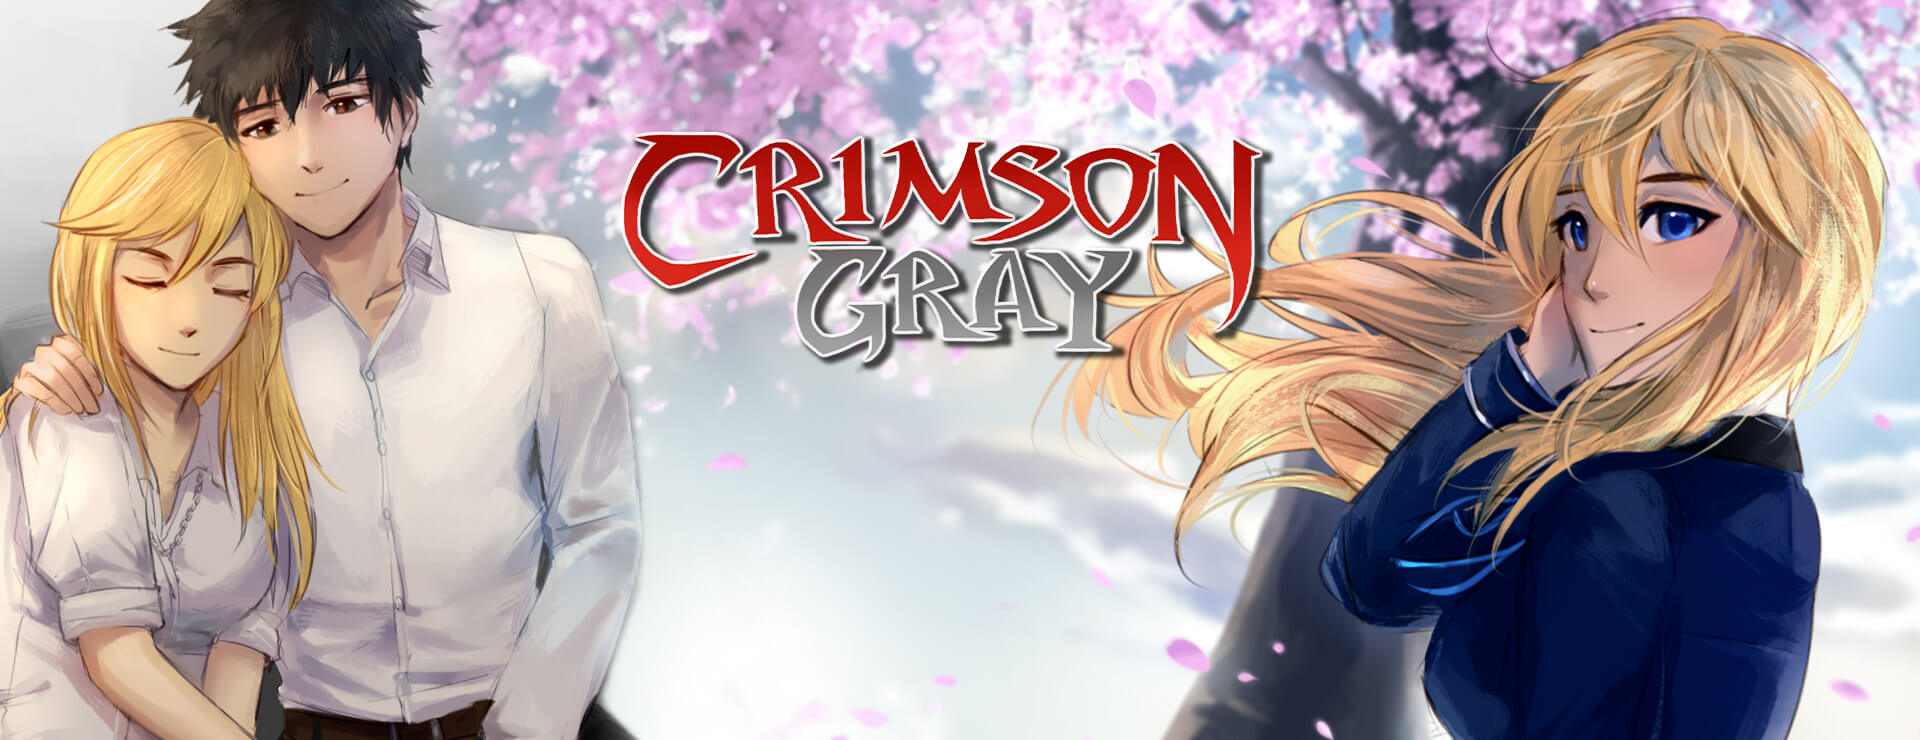 Crimson Gray (SFW Version) - Aventura Acción Juego